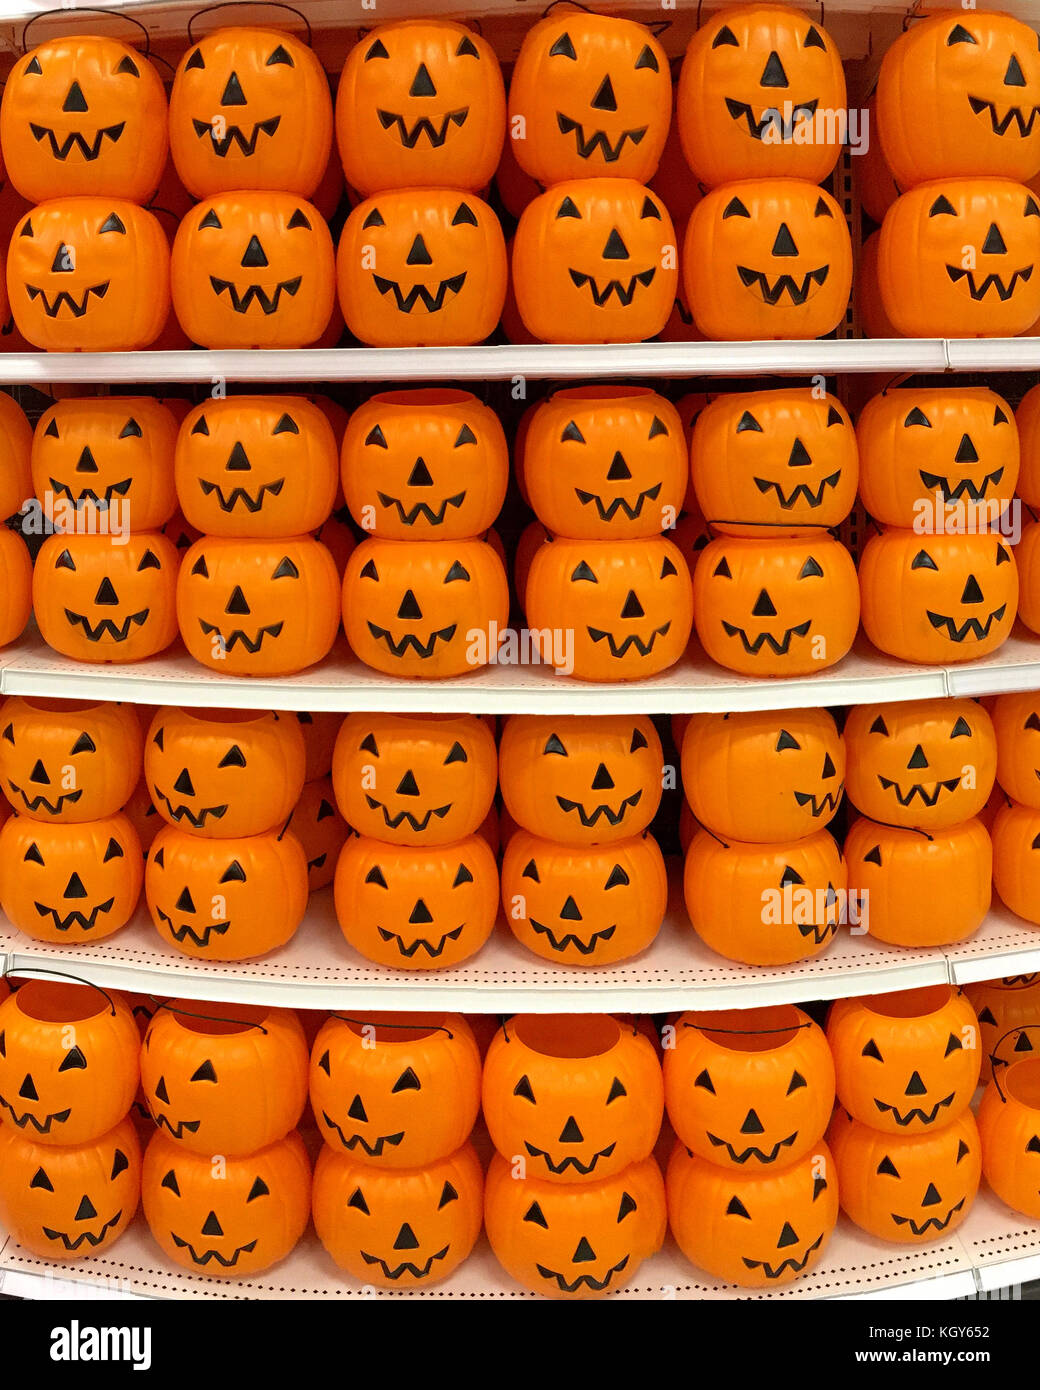 En plastique orange halloween citrouille Jack o lantern trick ou traiter les seaux et empilés en rangées sur une étagère magasin Shoppers prêt pour cette maison de vacances Banque D'Images